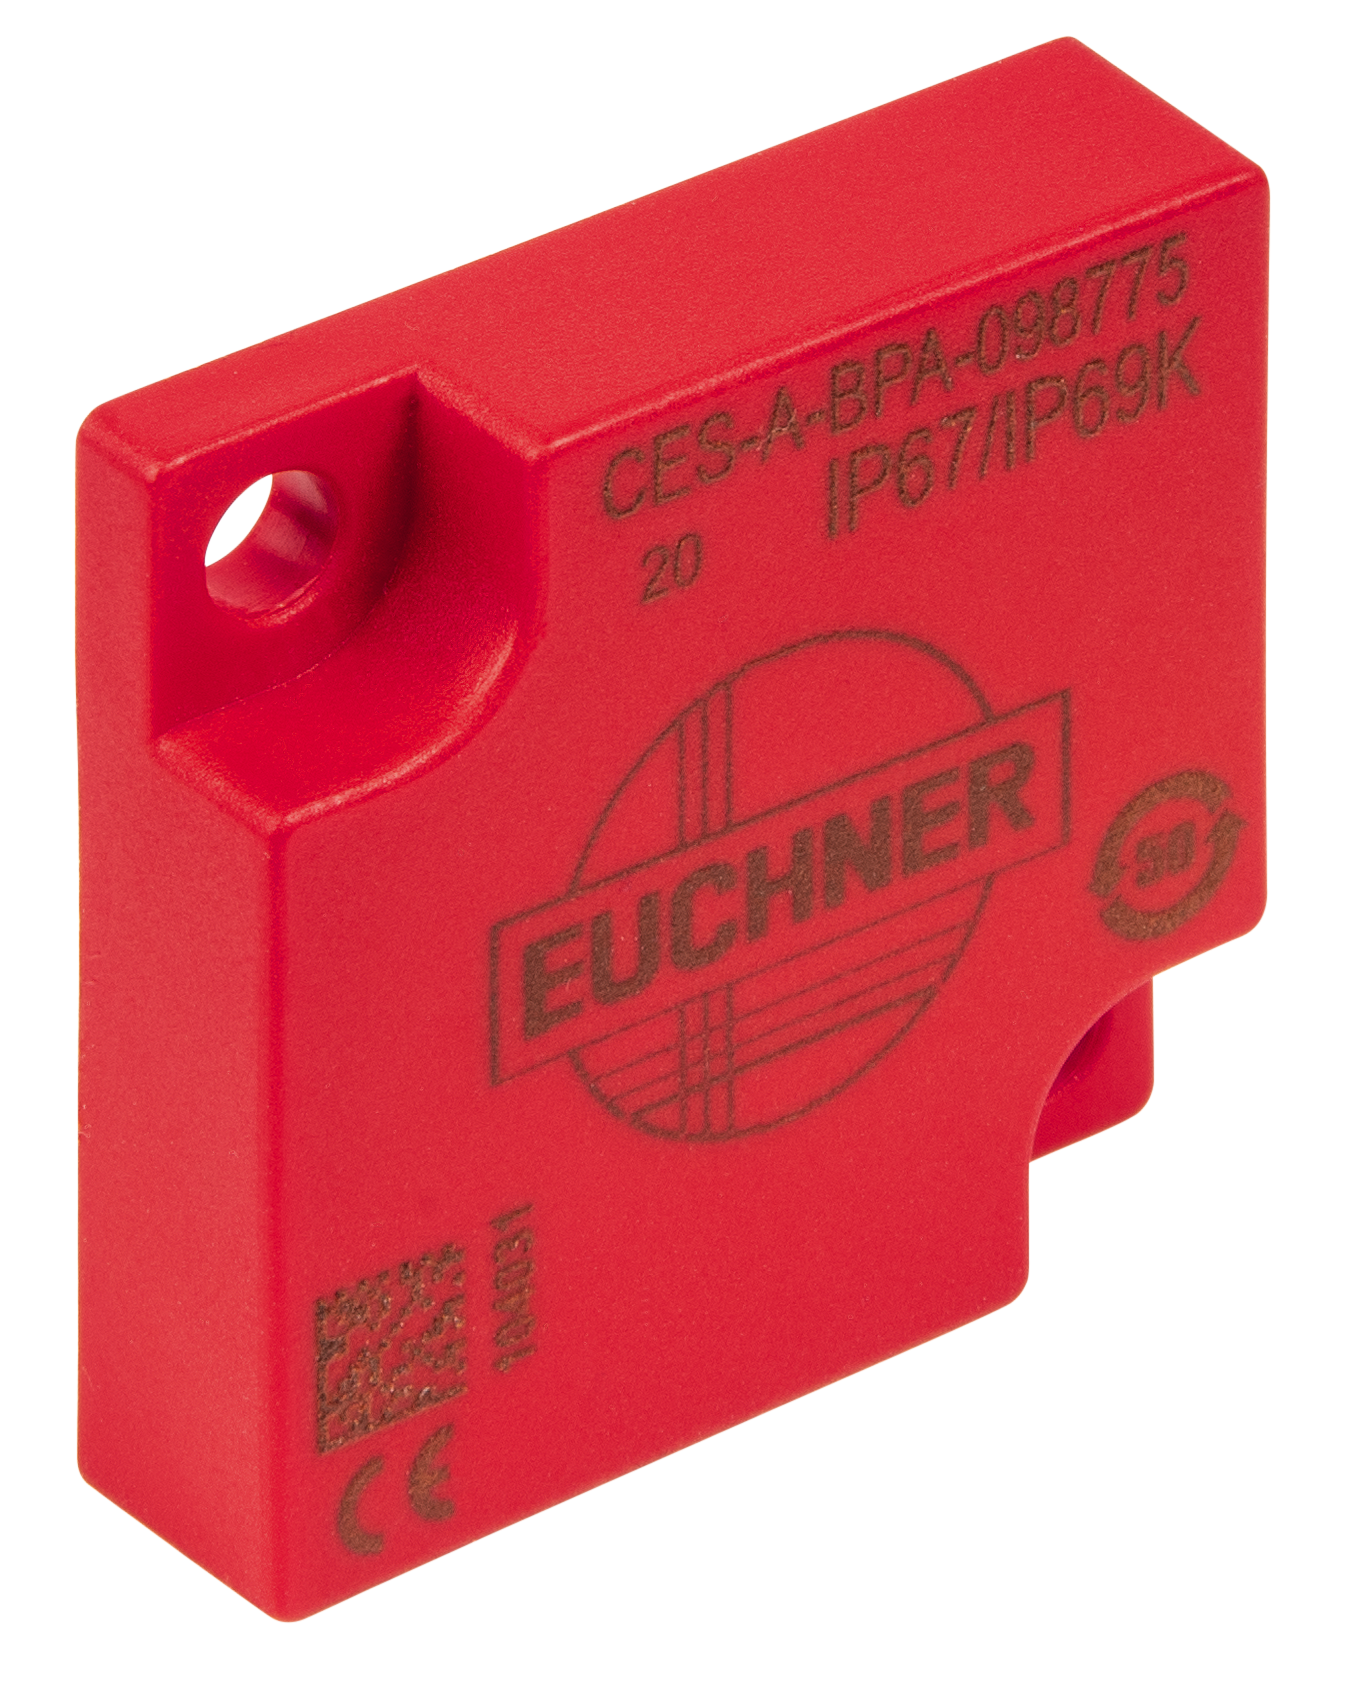 Actuator CES-A-BPA-098775  (Order no. 098775)